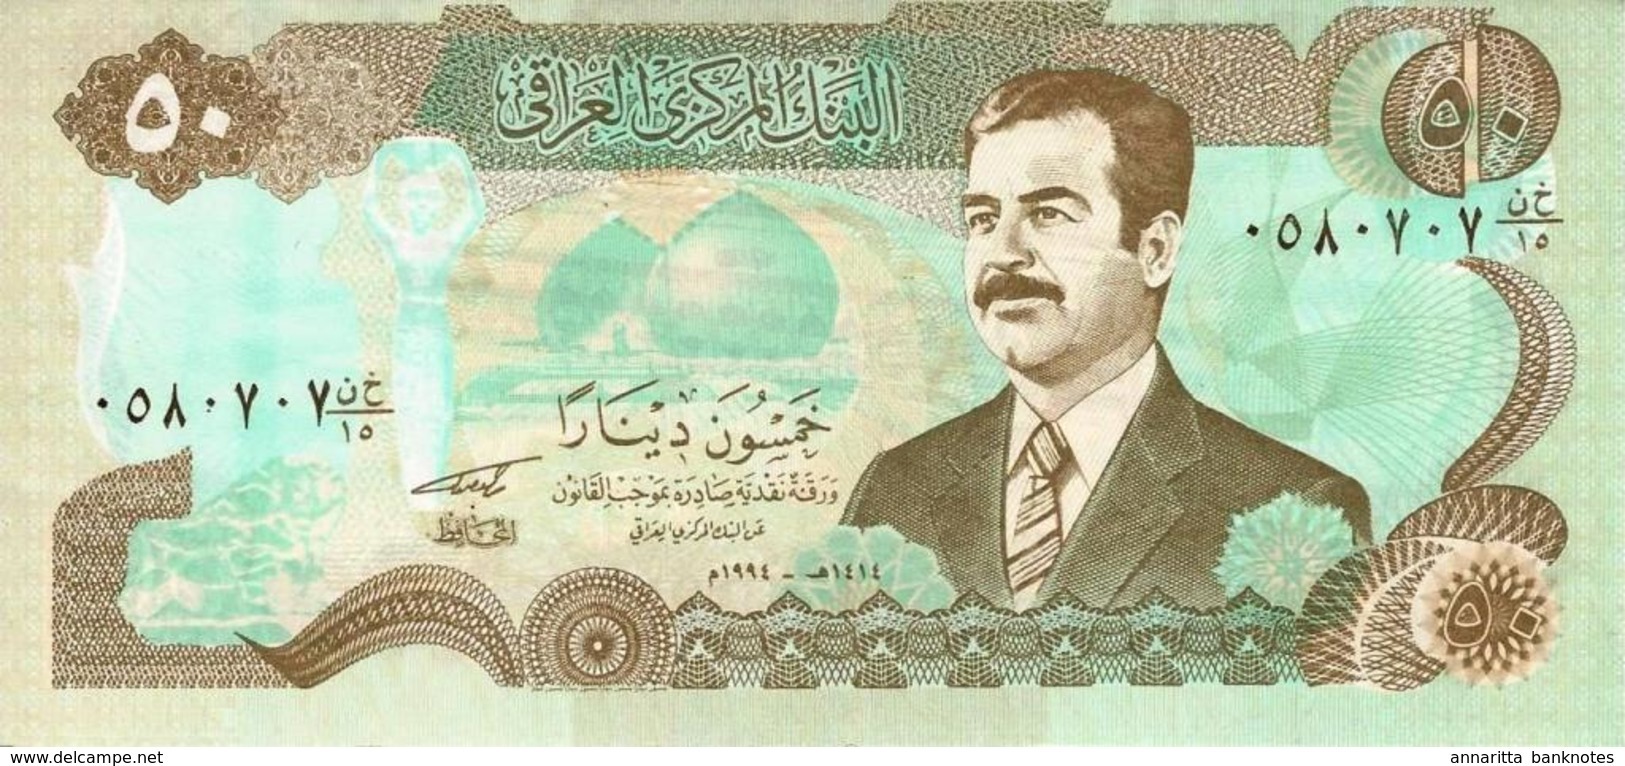 IRAQ 50 DINARS 1994 P-83a UNC [IQ339a] - Iraq